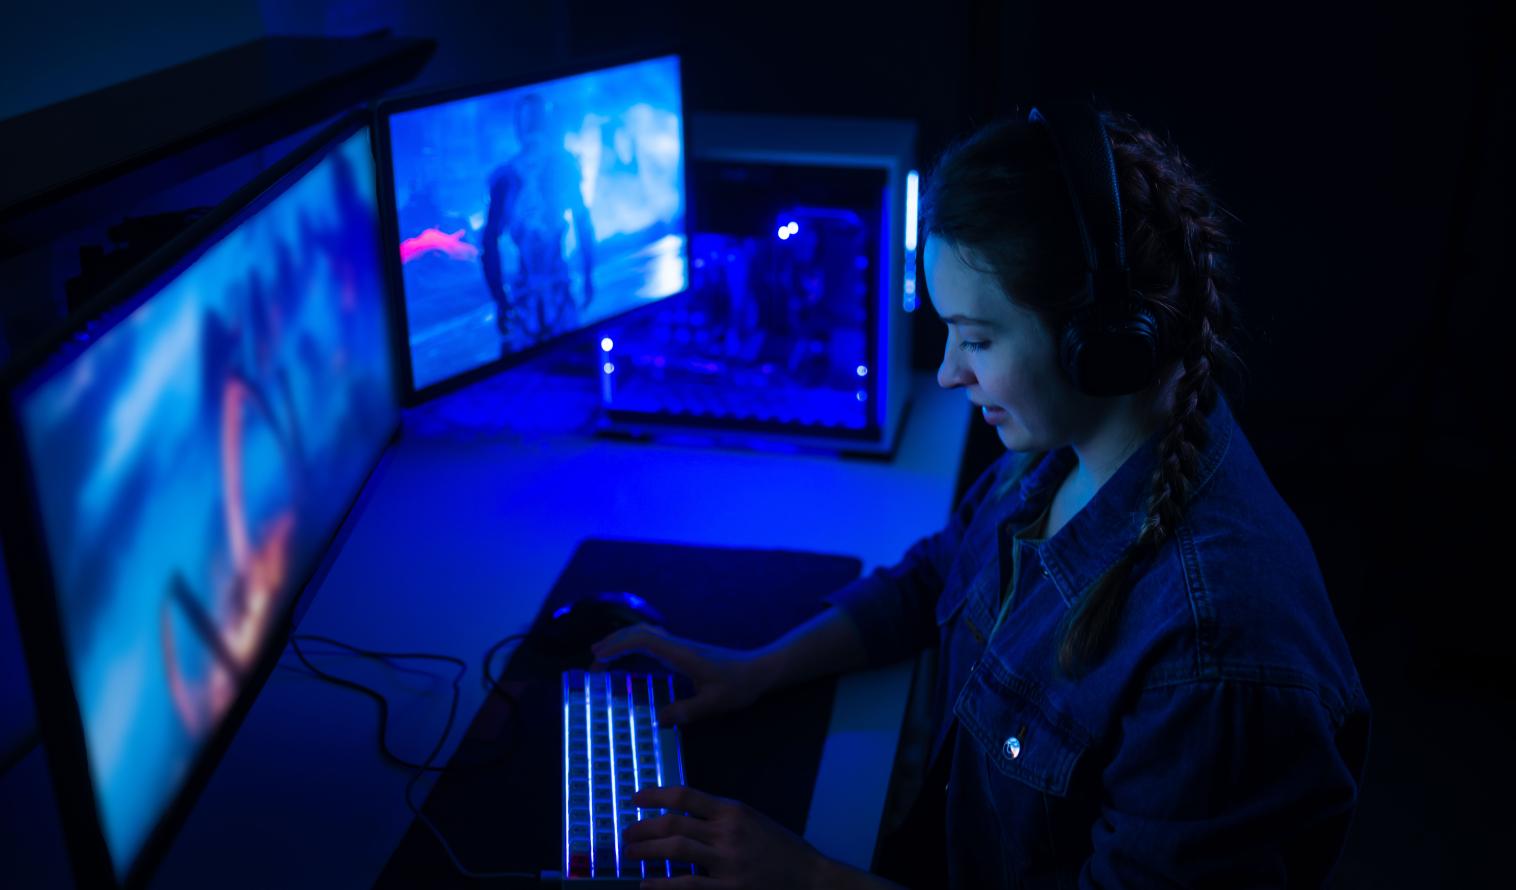 Frau mit Kopfhörern spielt ein Computerspiel auf großen Monitoren